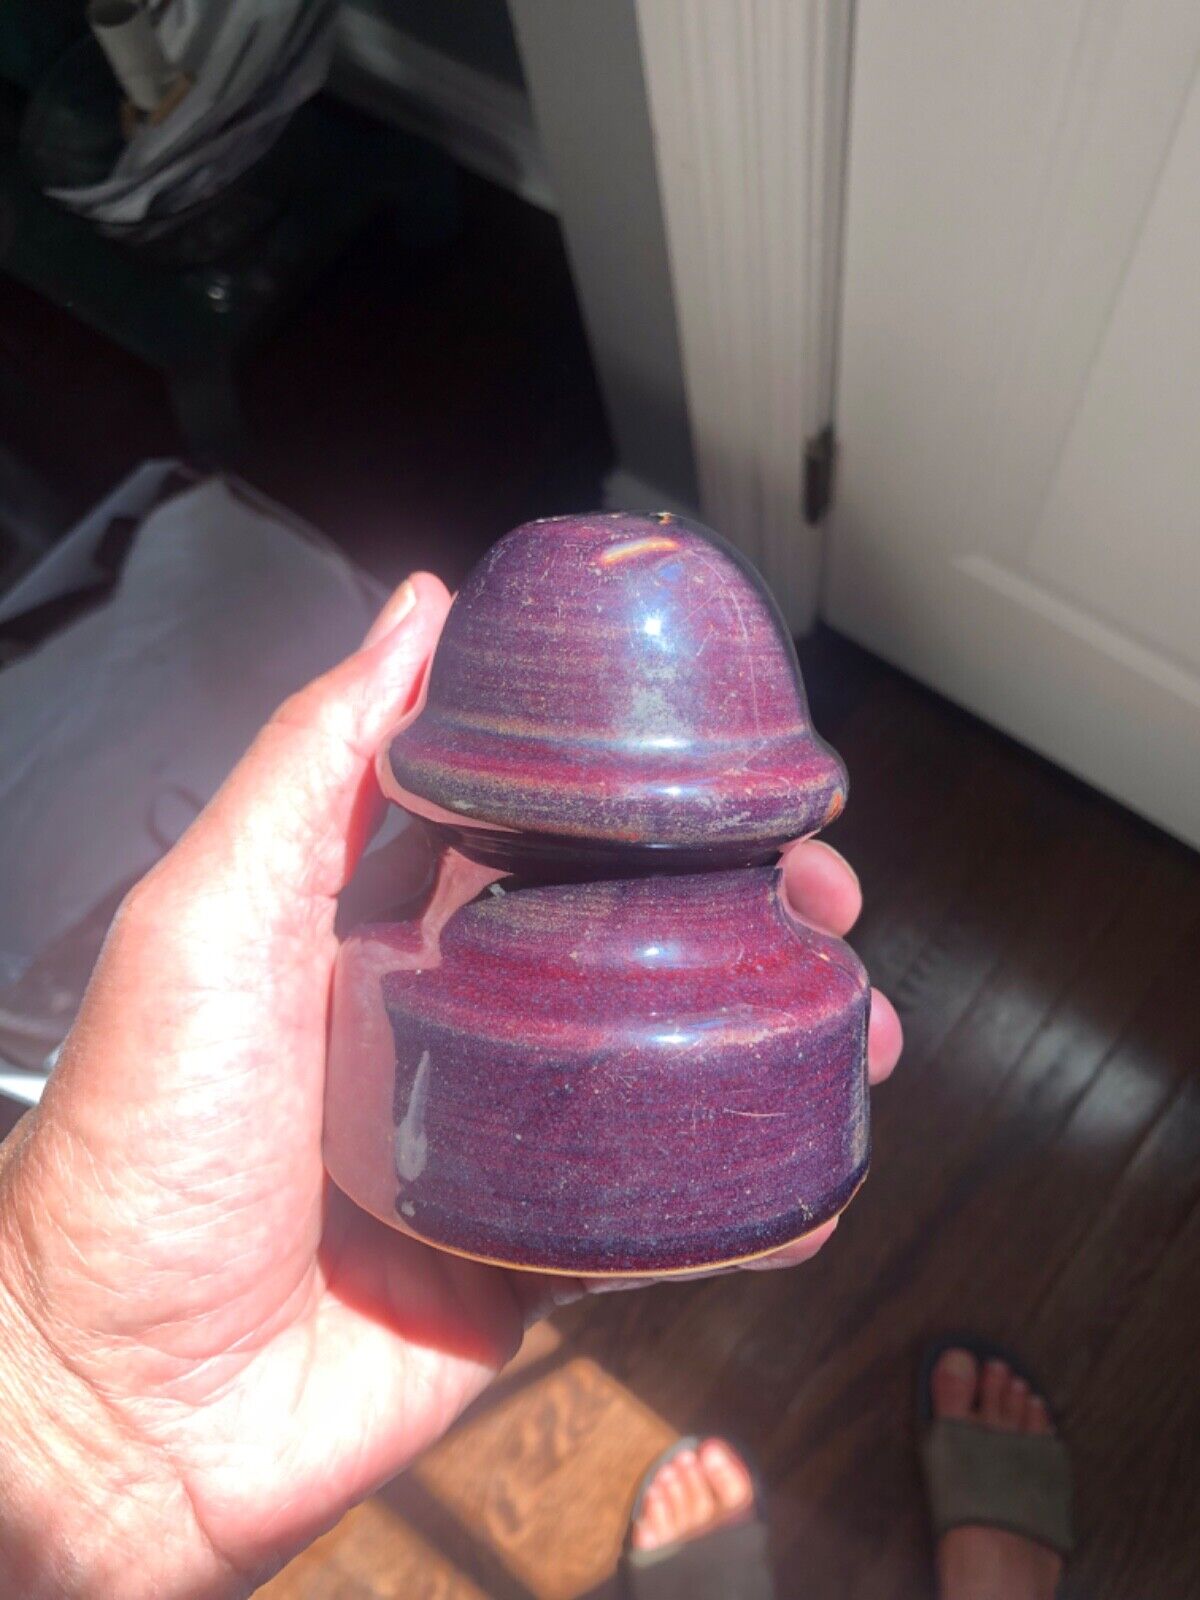 plum colored ceramic insulator